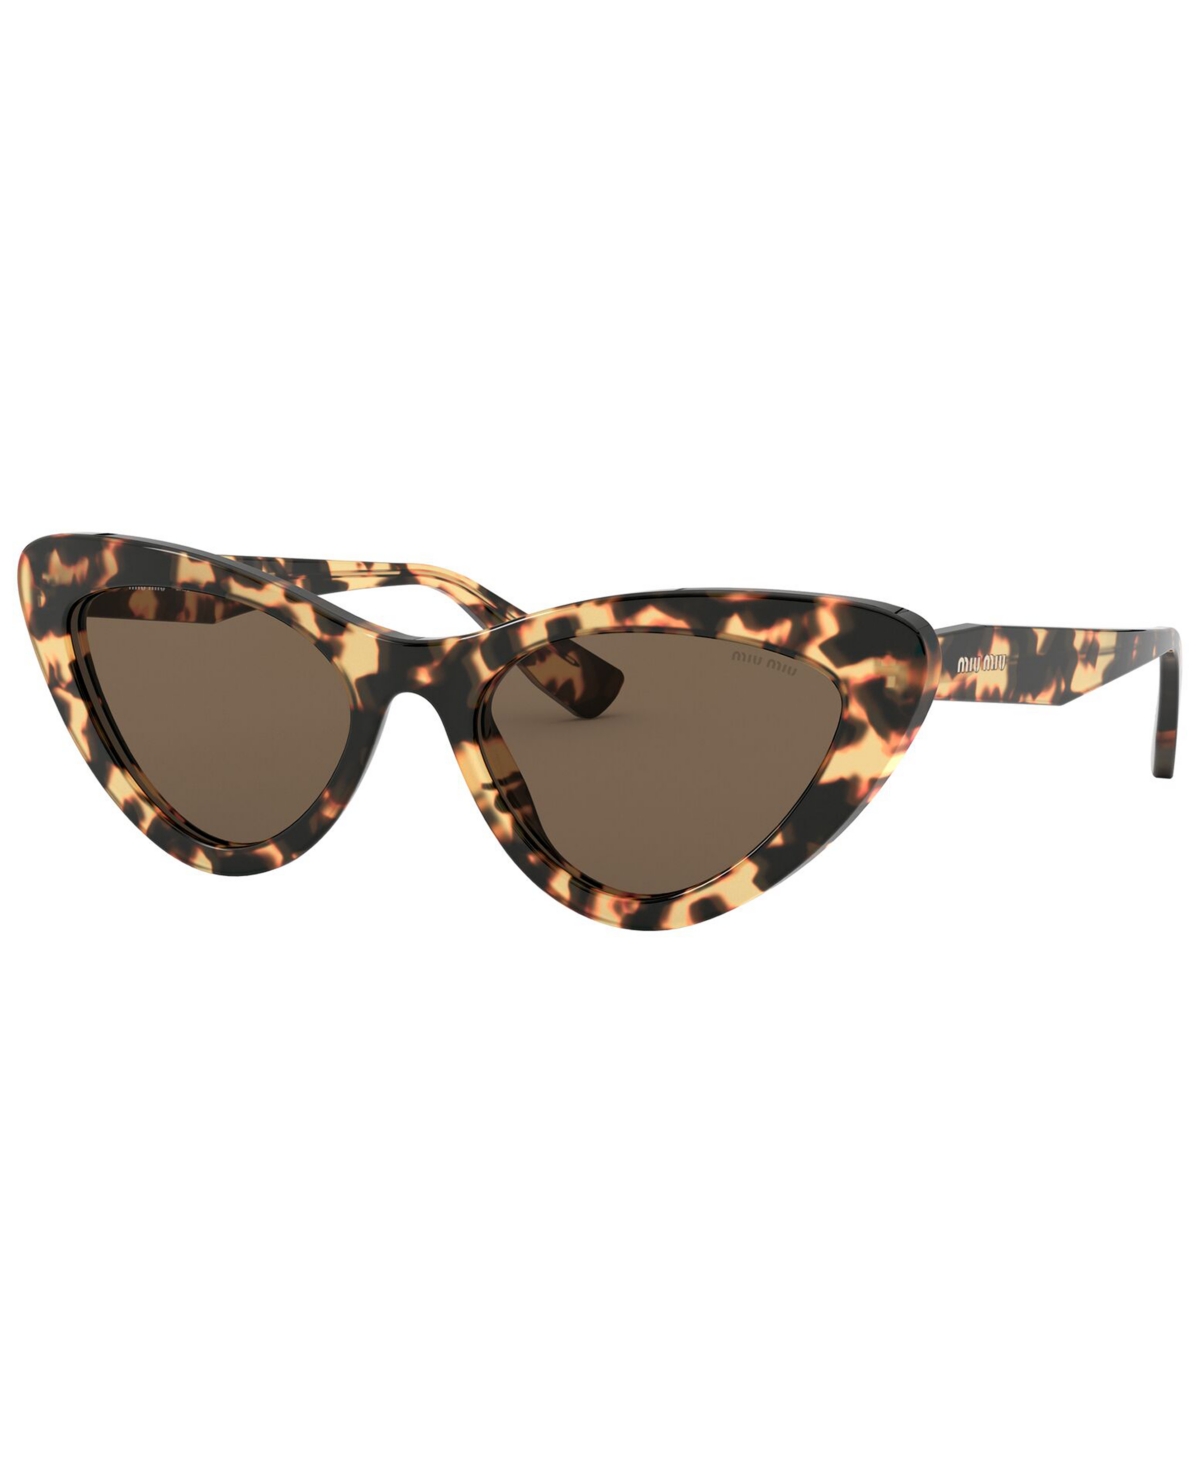 Miu Miu Women's Sunglasses, Mu 01vs55-x In Light Havana,brown